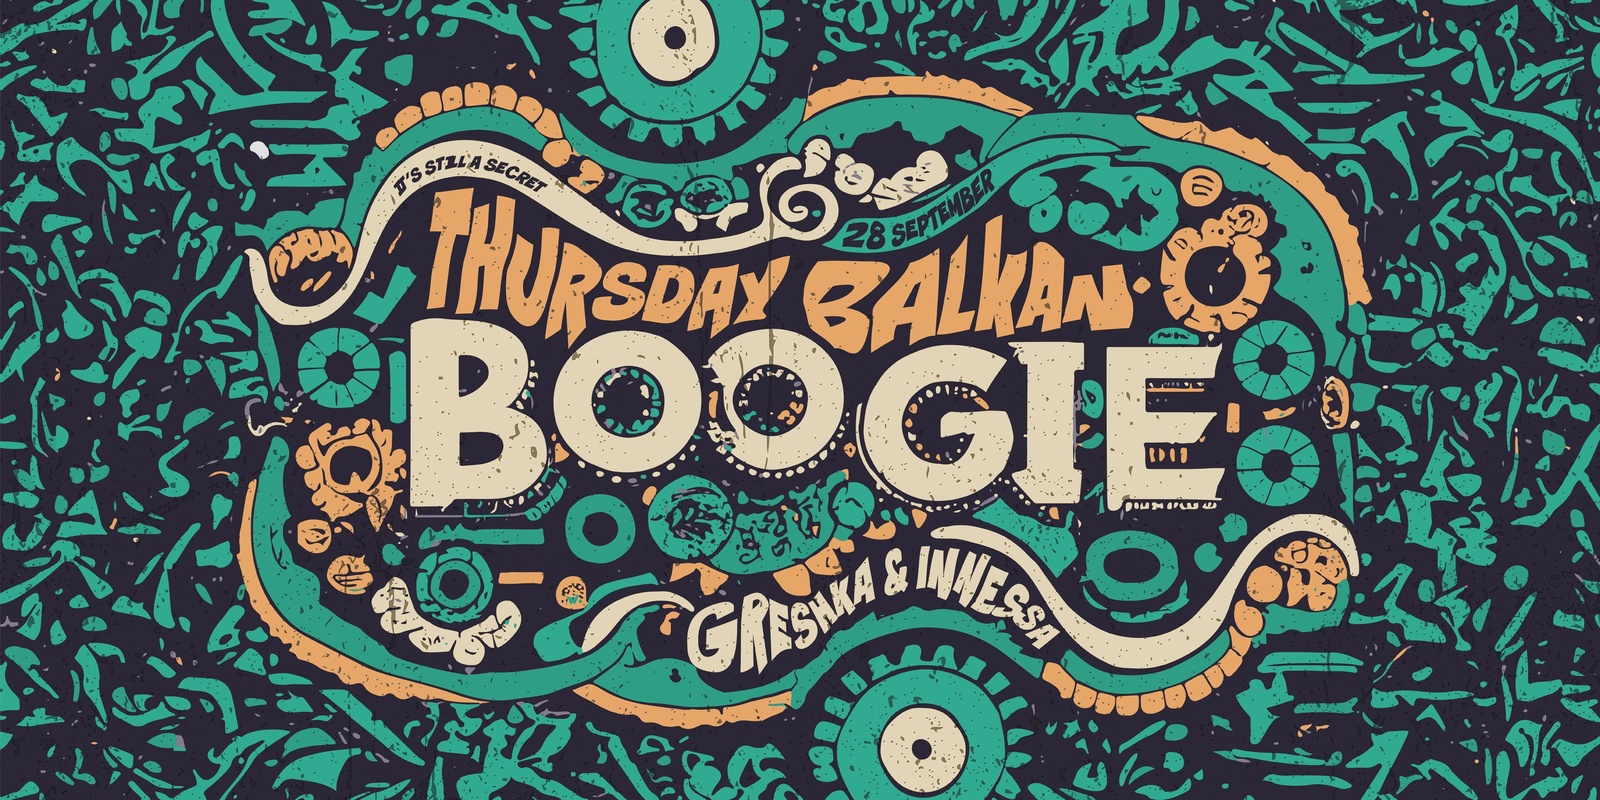 Banner image for Thursday Balkan Boogie with Greshka and Innessa